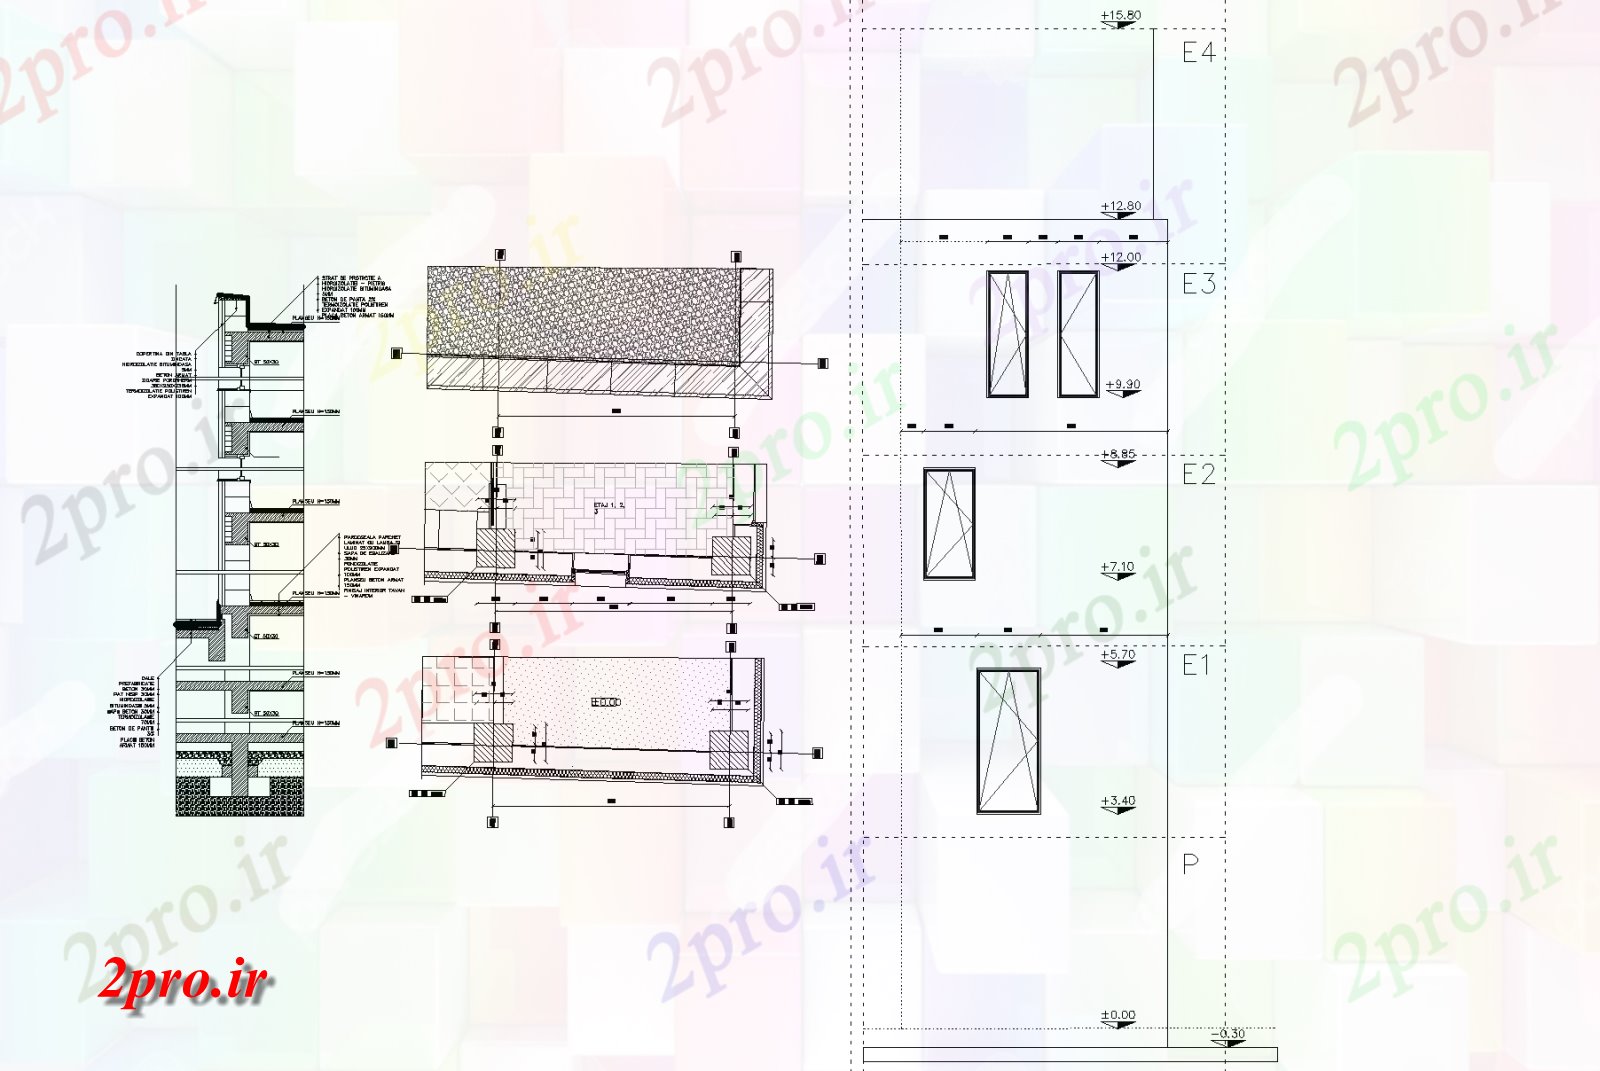 دانلود نقشه  خانه مسکونی ، ویلانمای مسکن جزئیات طرحی جزئیات (کد75283)